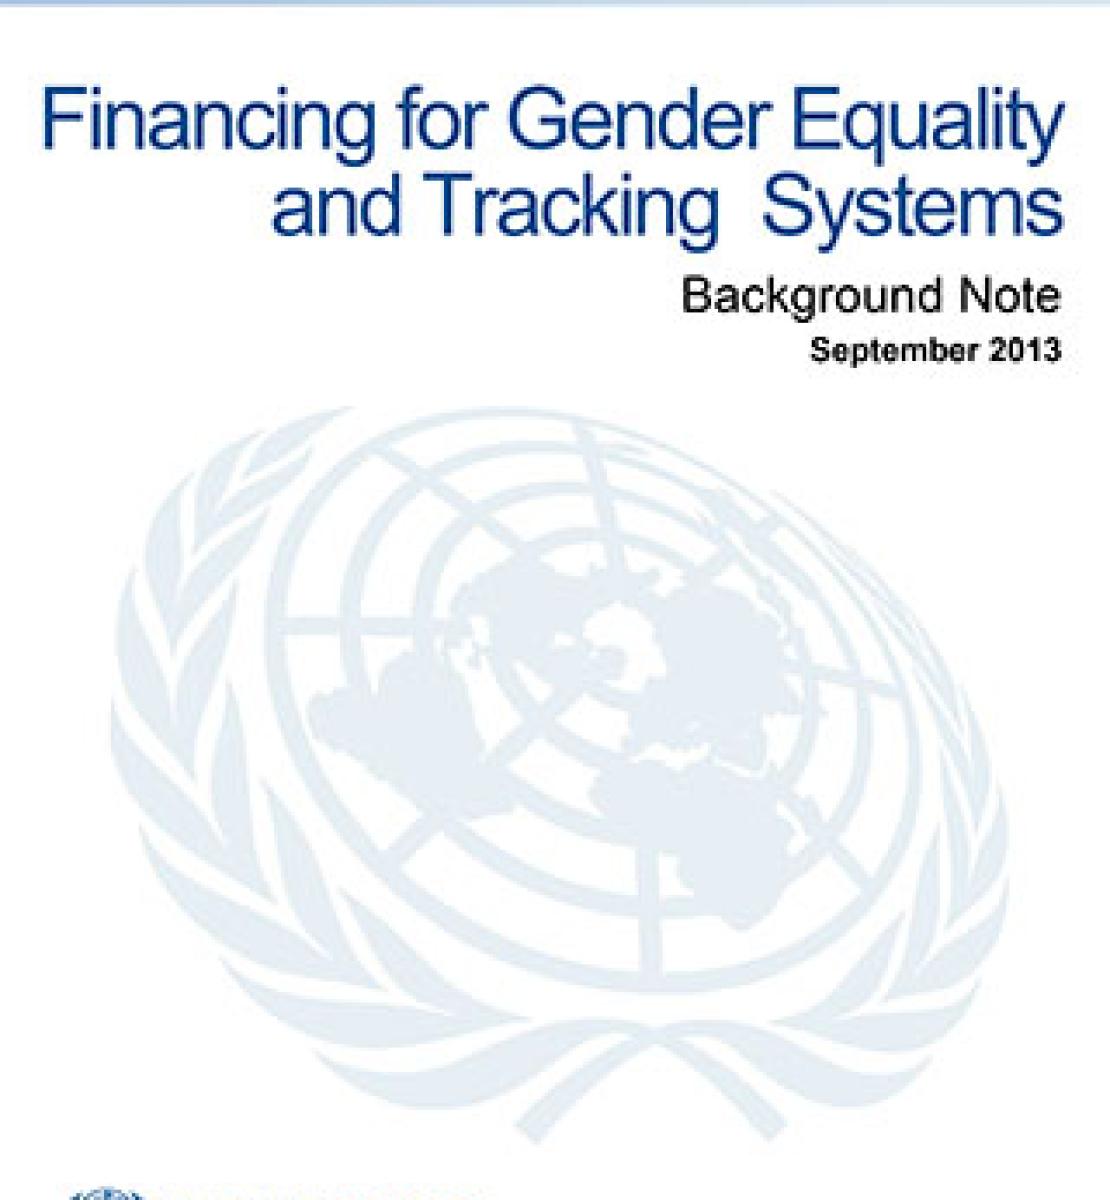 Financement de programmes pour l'égalité des sexes et dispositifs de suivi des investissements - Note d'information